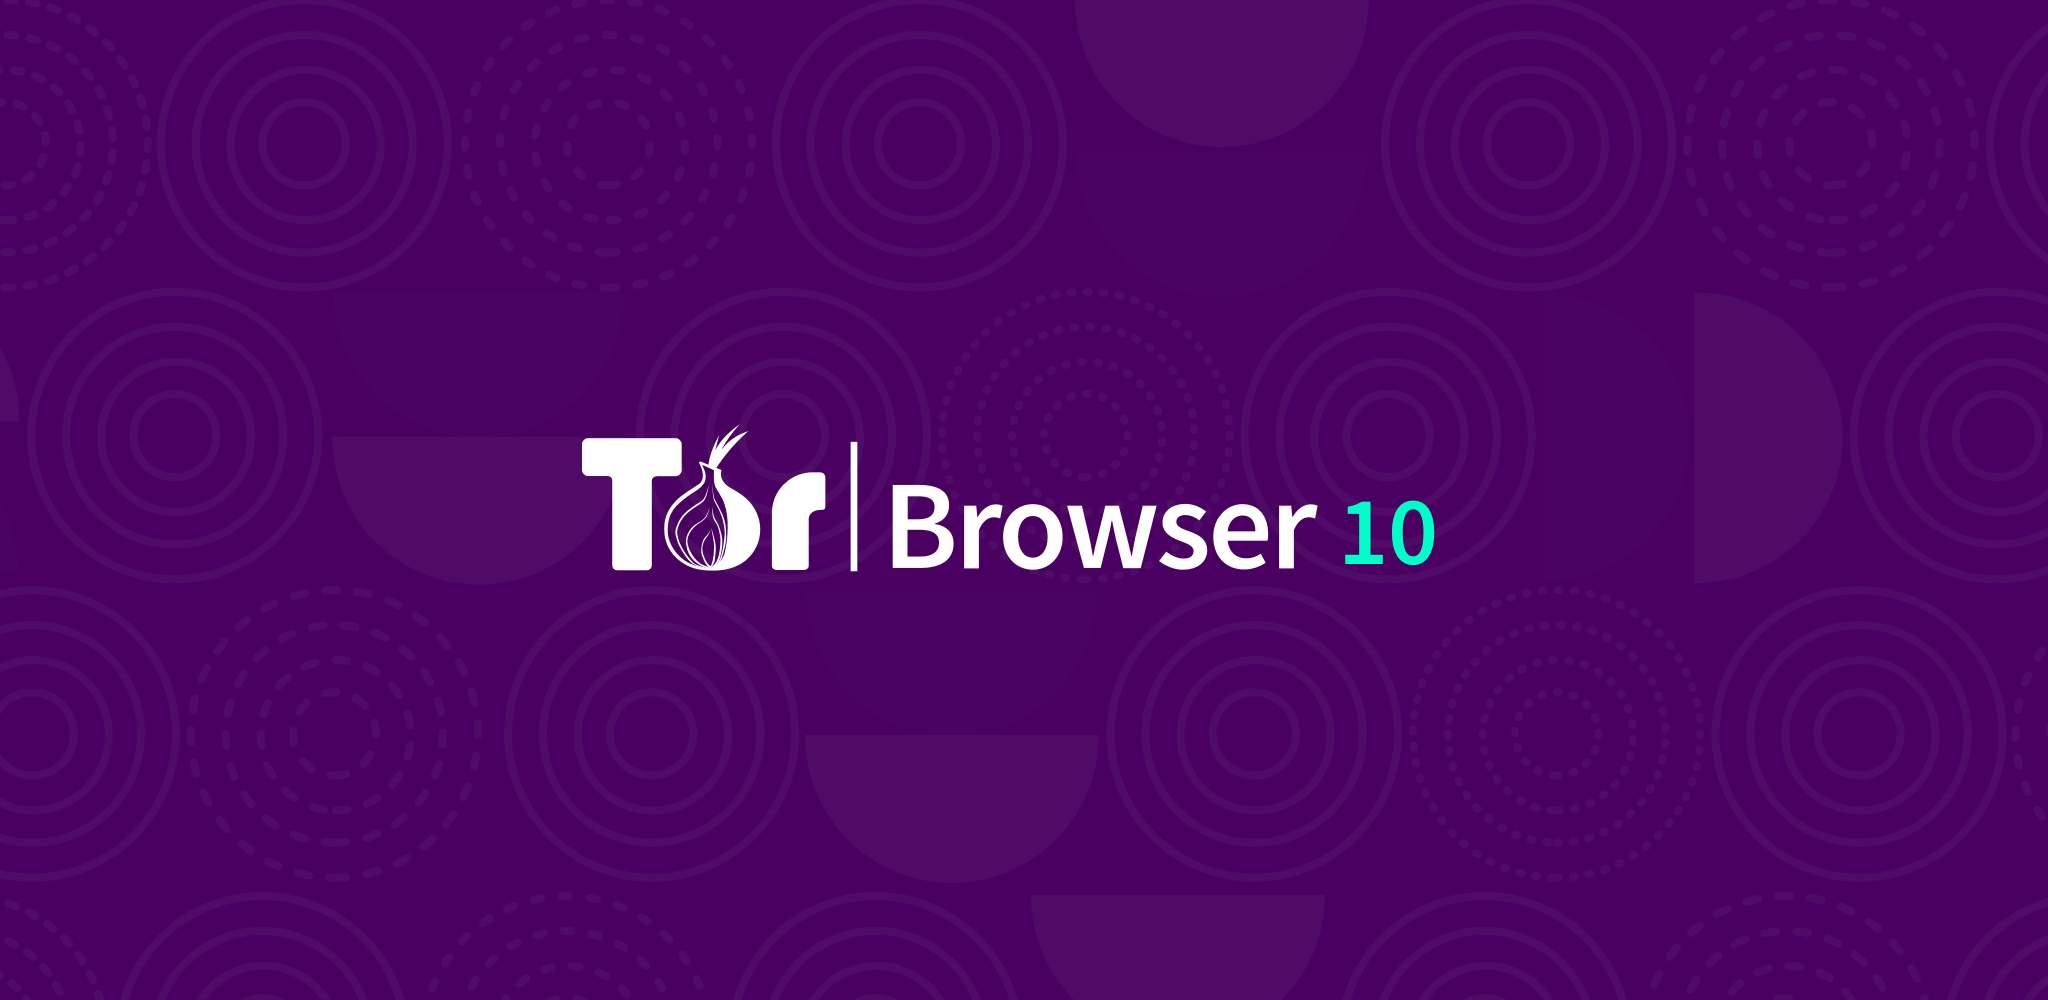 Скачать tor browser bundle для windows mega download torrent tor browser mega